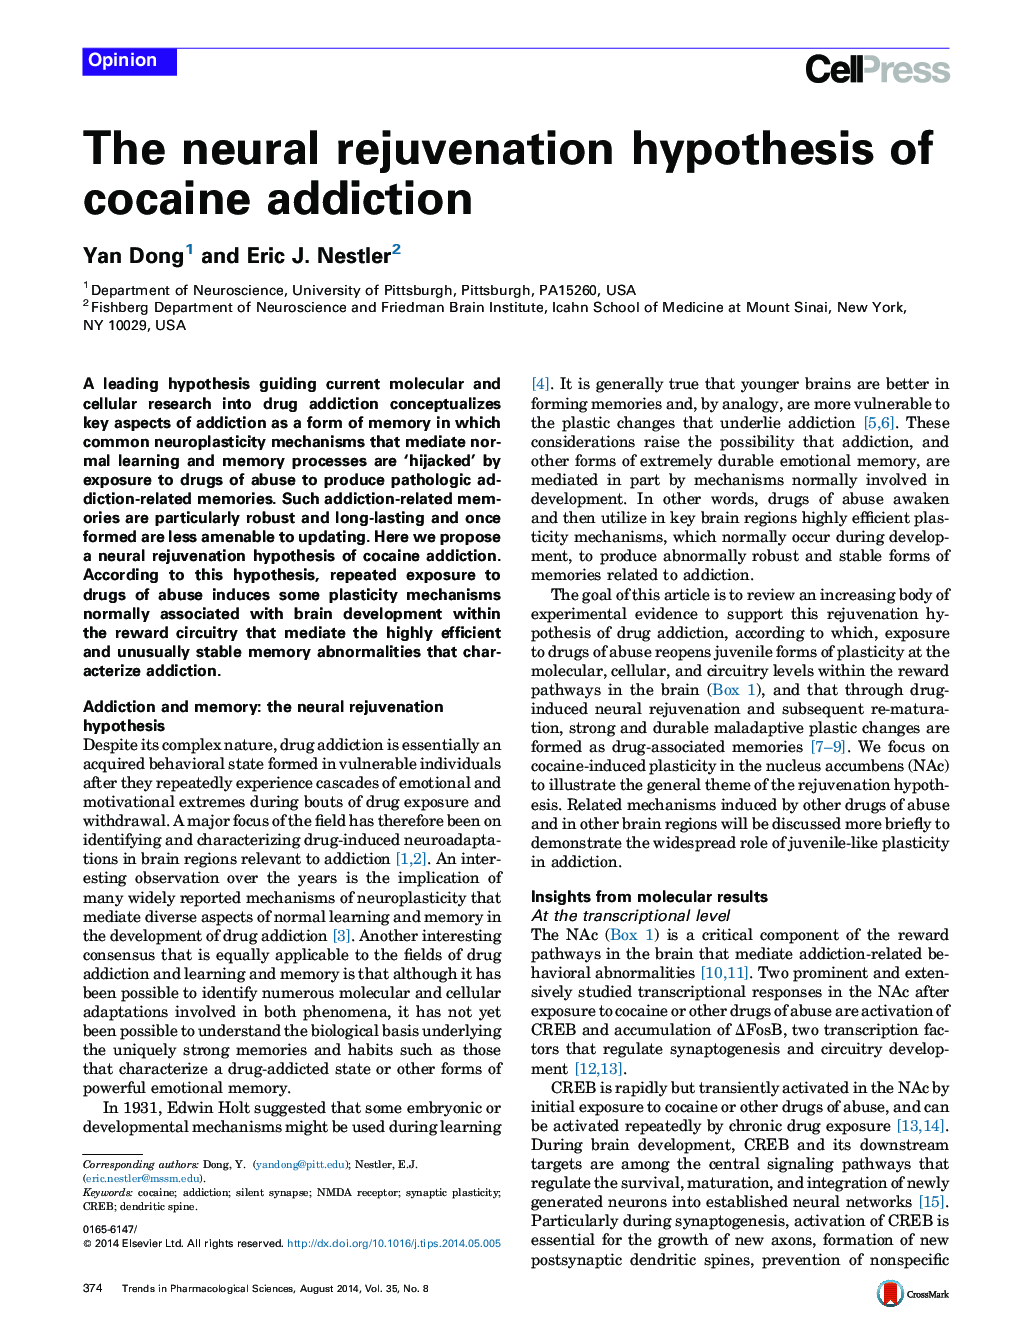 فرضیه جوان سازی عصبی از اعتیاد کوکائین 